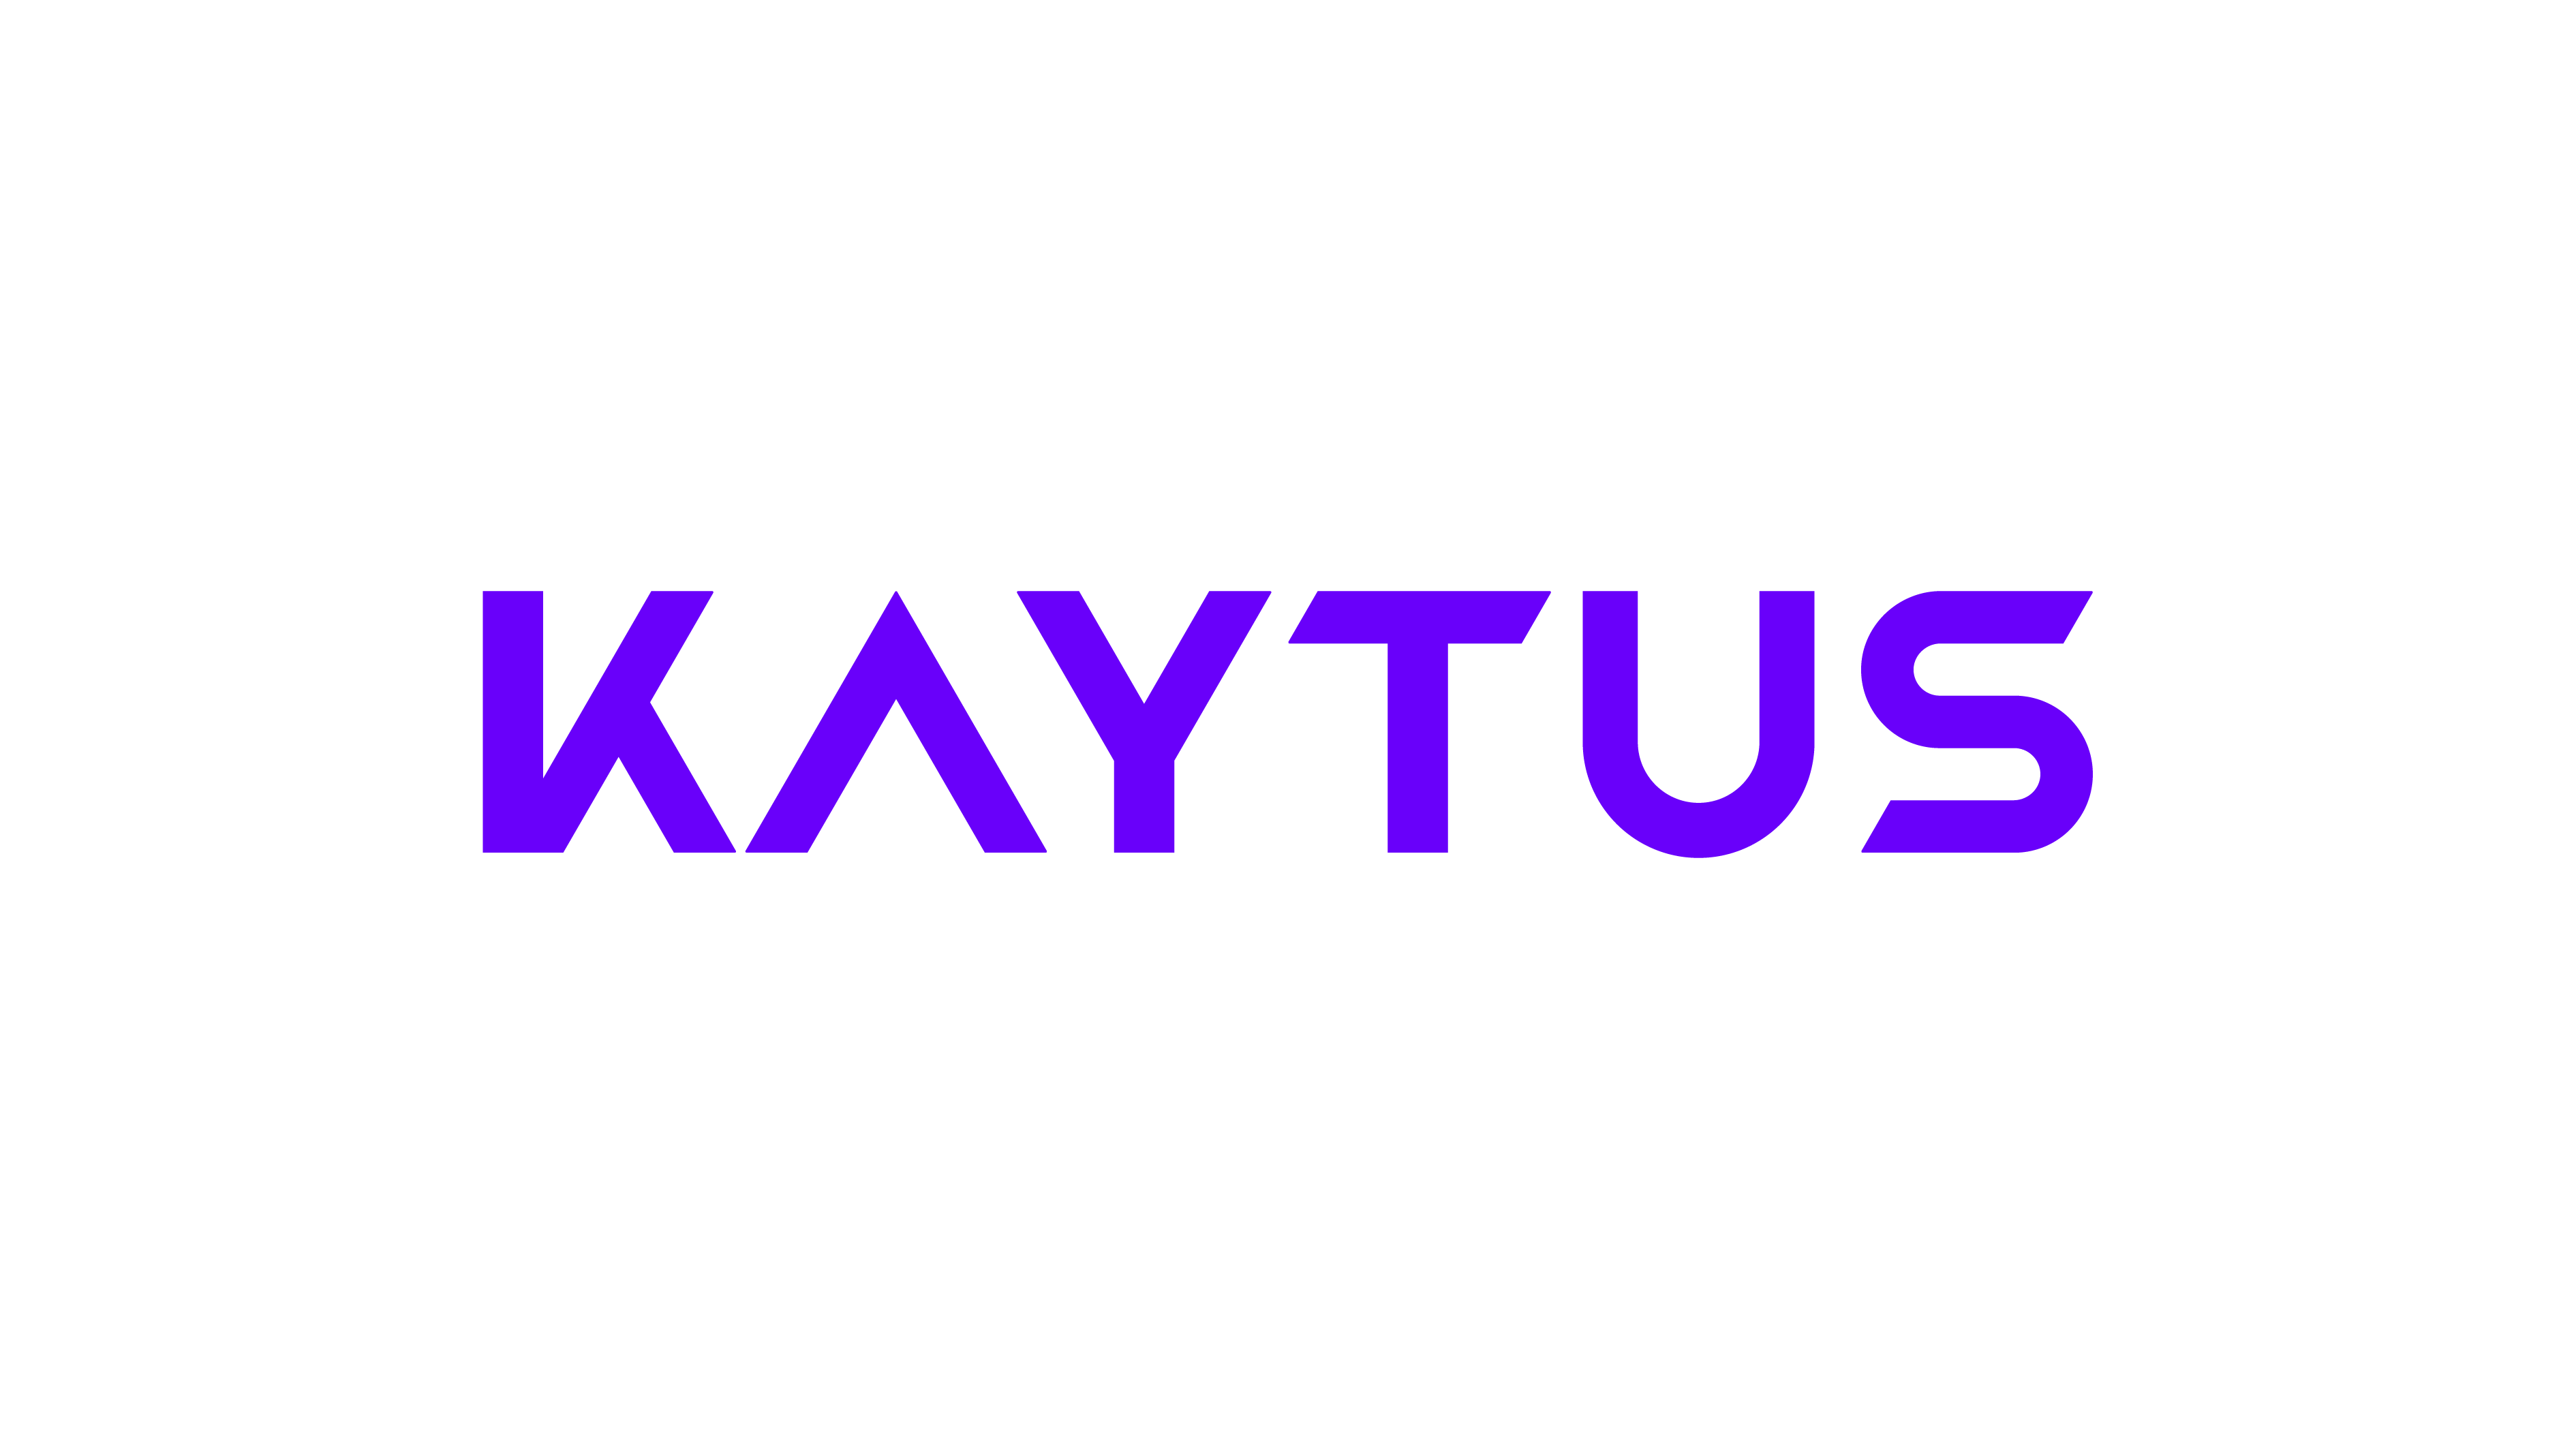 KAYTUS Logo